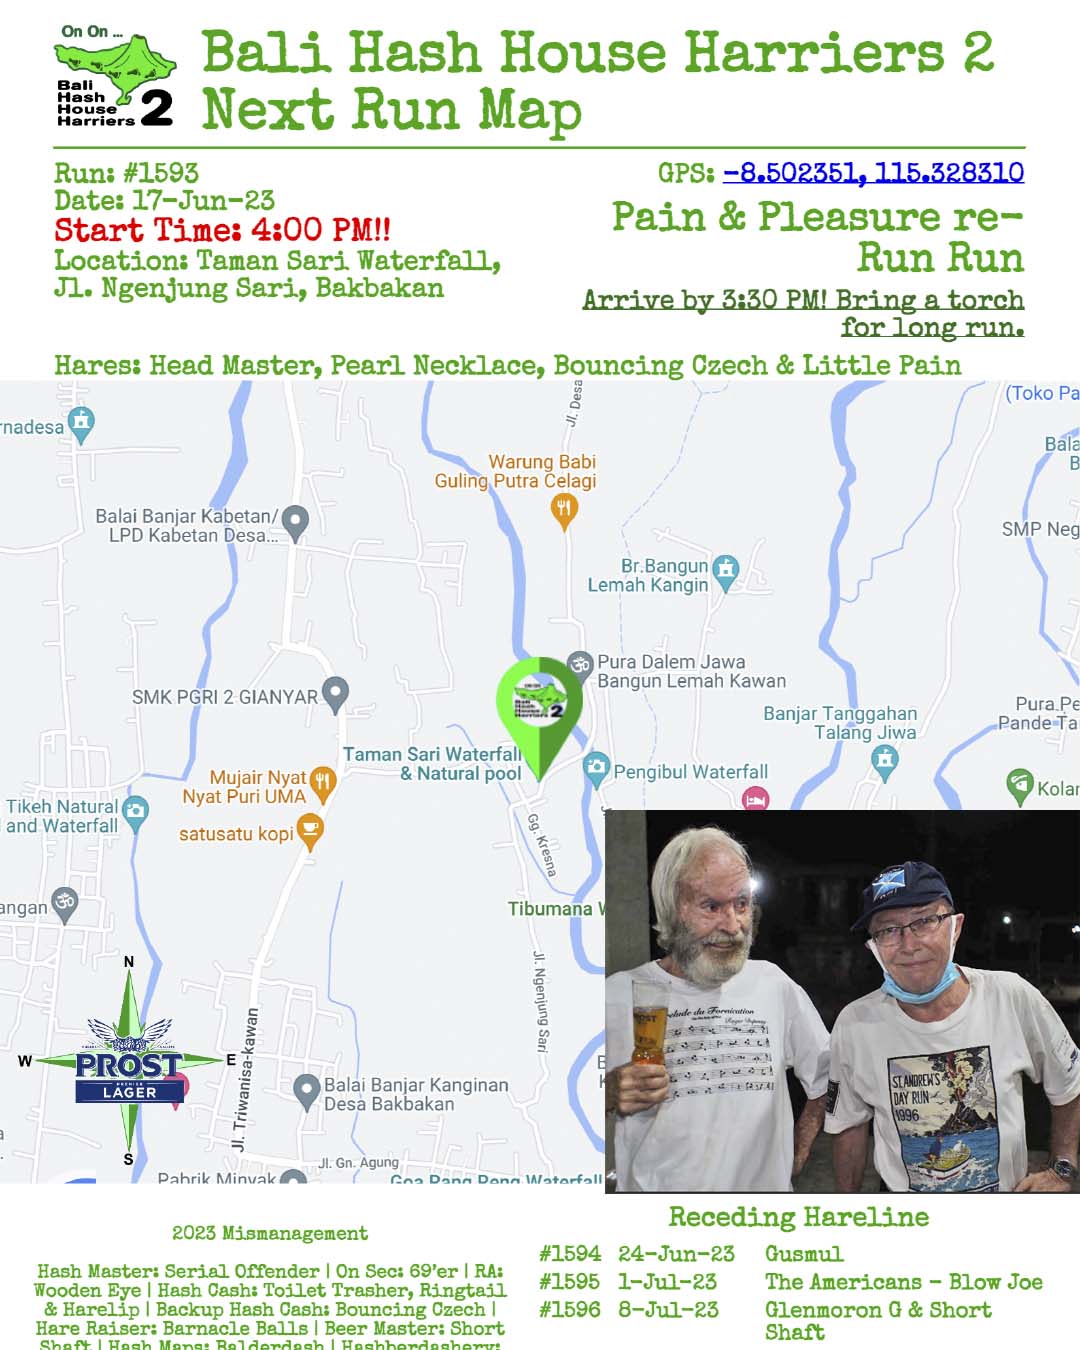 Bali Hash 2 Next Run Map - #1593 - Taman Sari Waterfall, Jl. Ngenjung Sari, Bakbakan